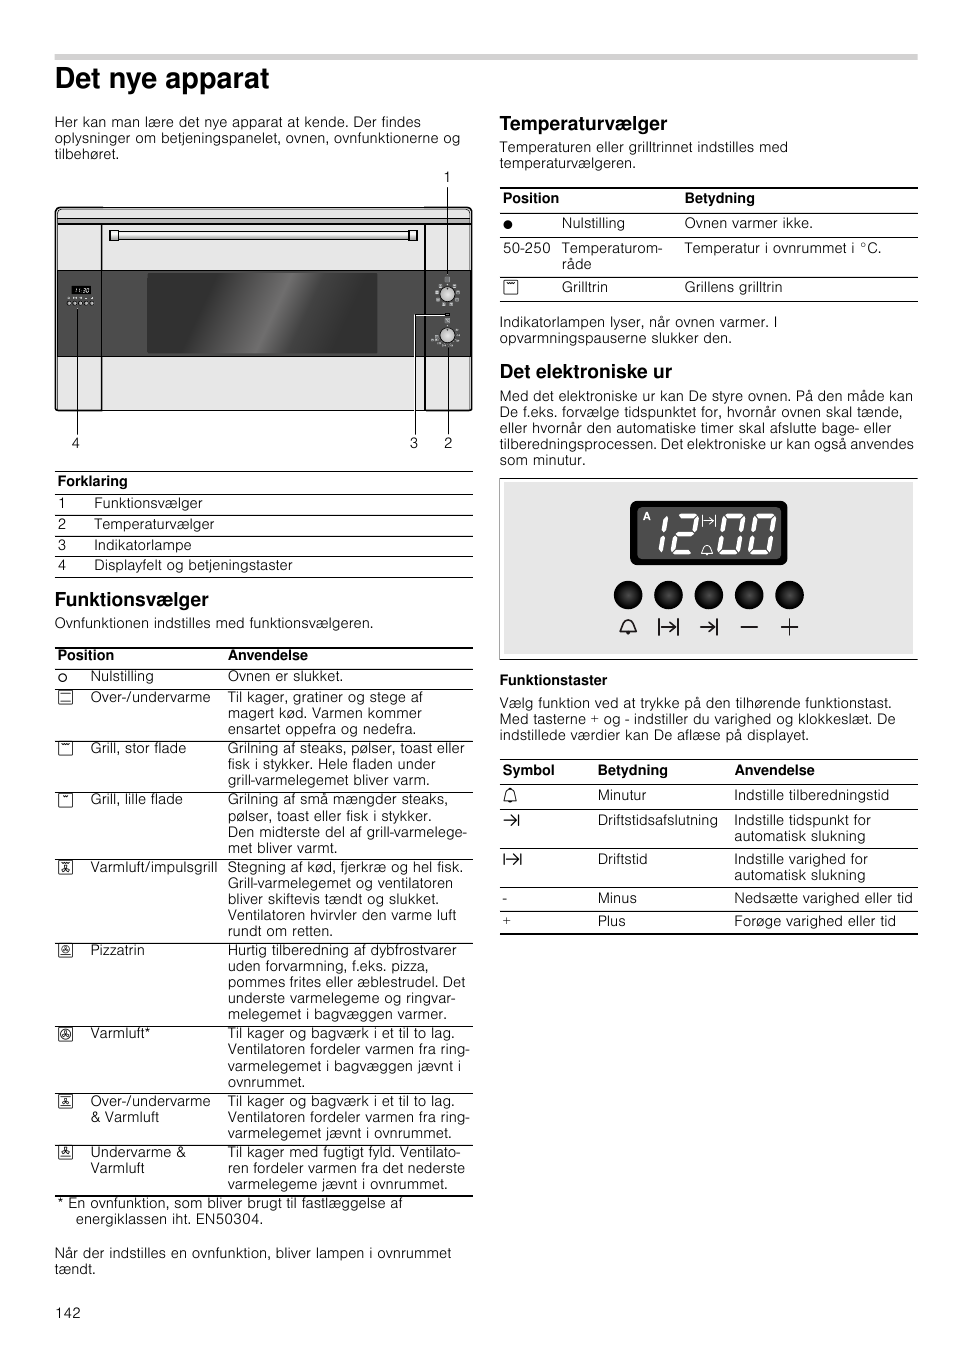 Det nye apparat, Funktionsvælger, Temperaturvælger | Siemens HB933R51 User  Manual | Page 141 / 160 | Original mode